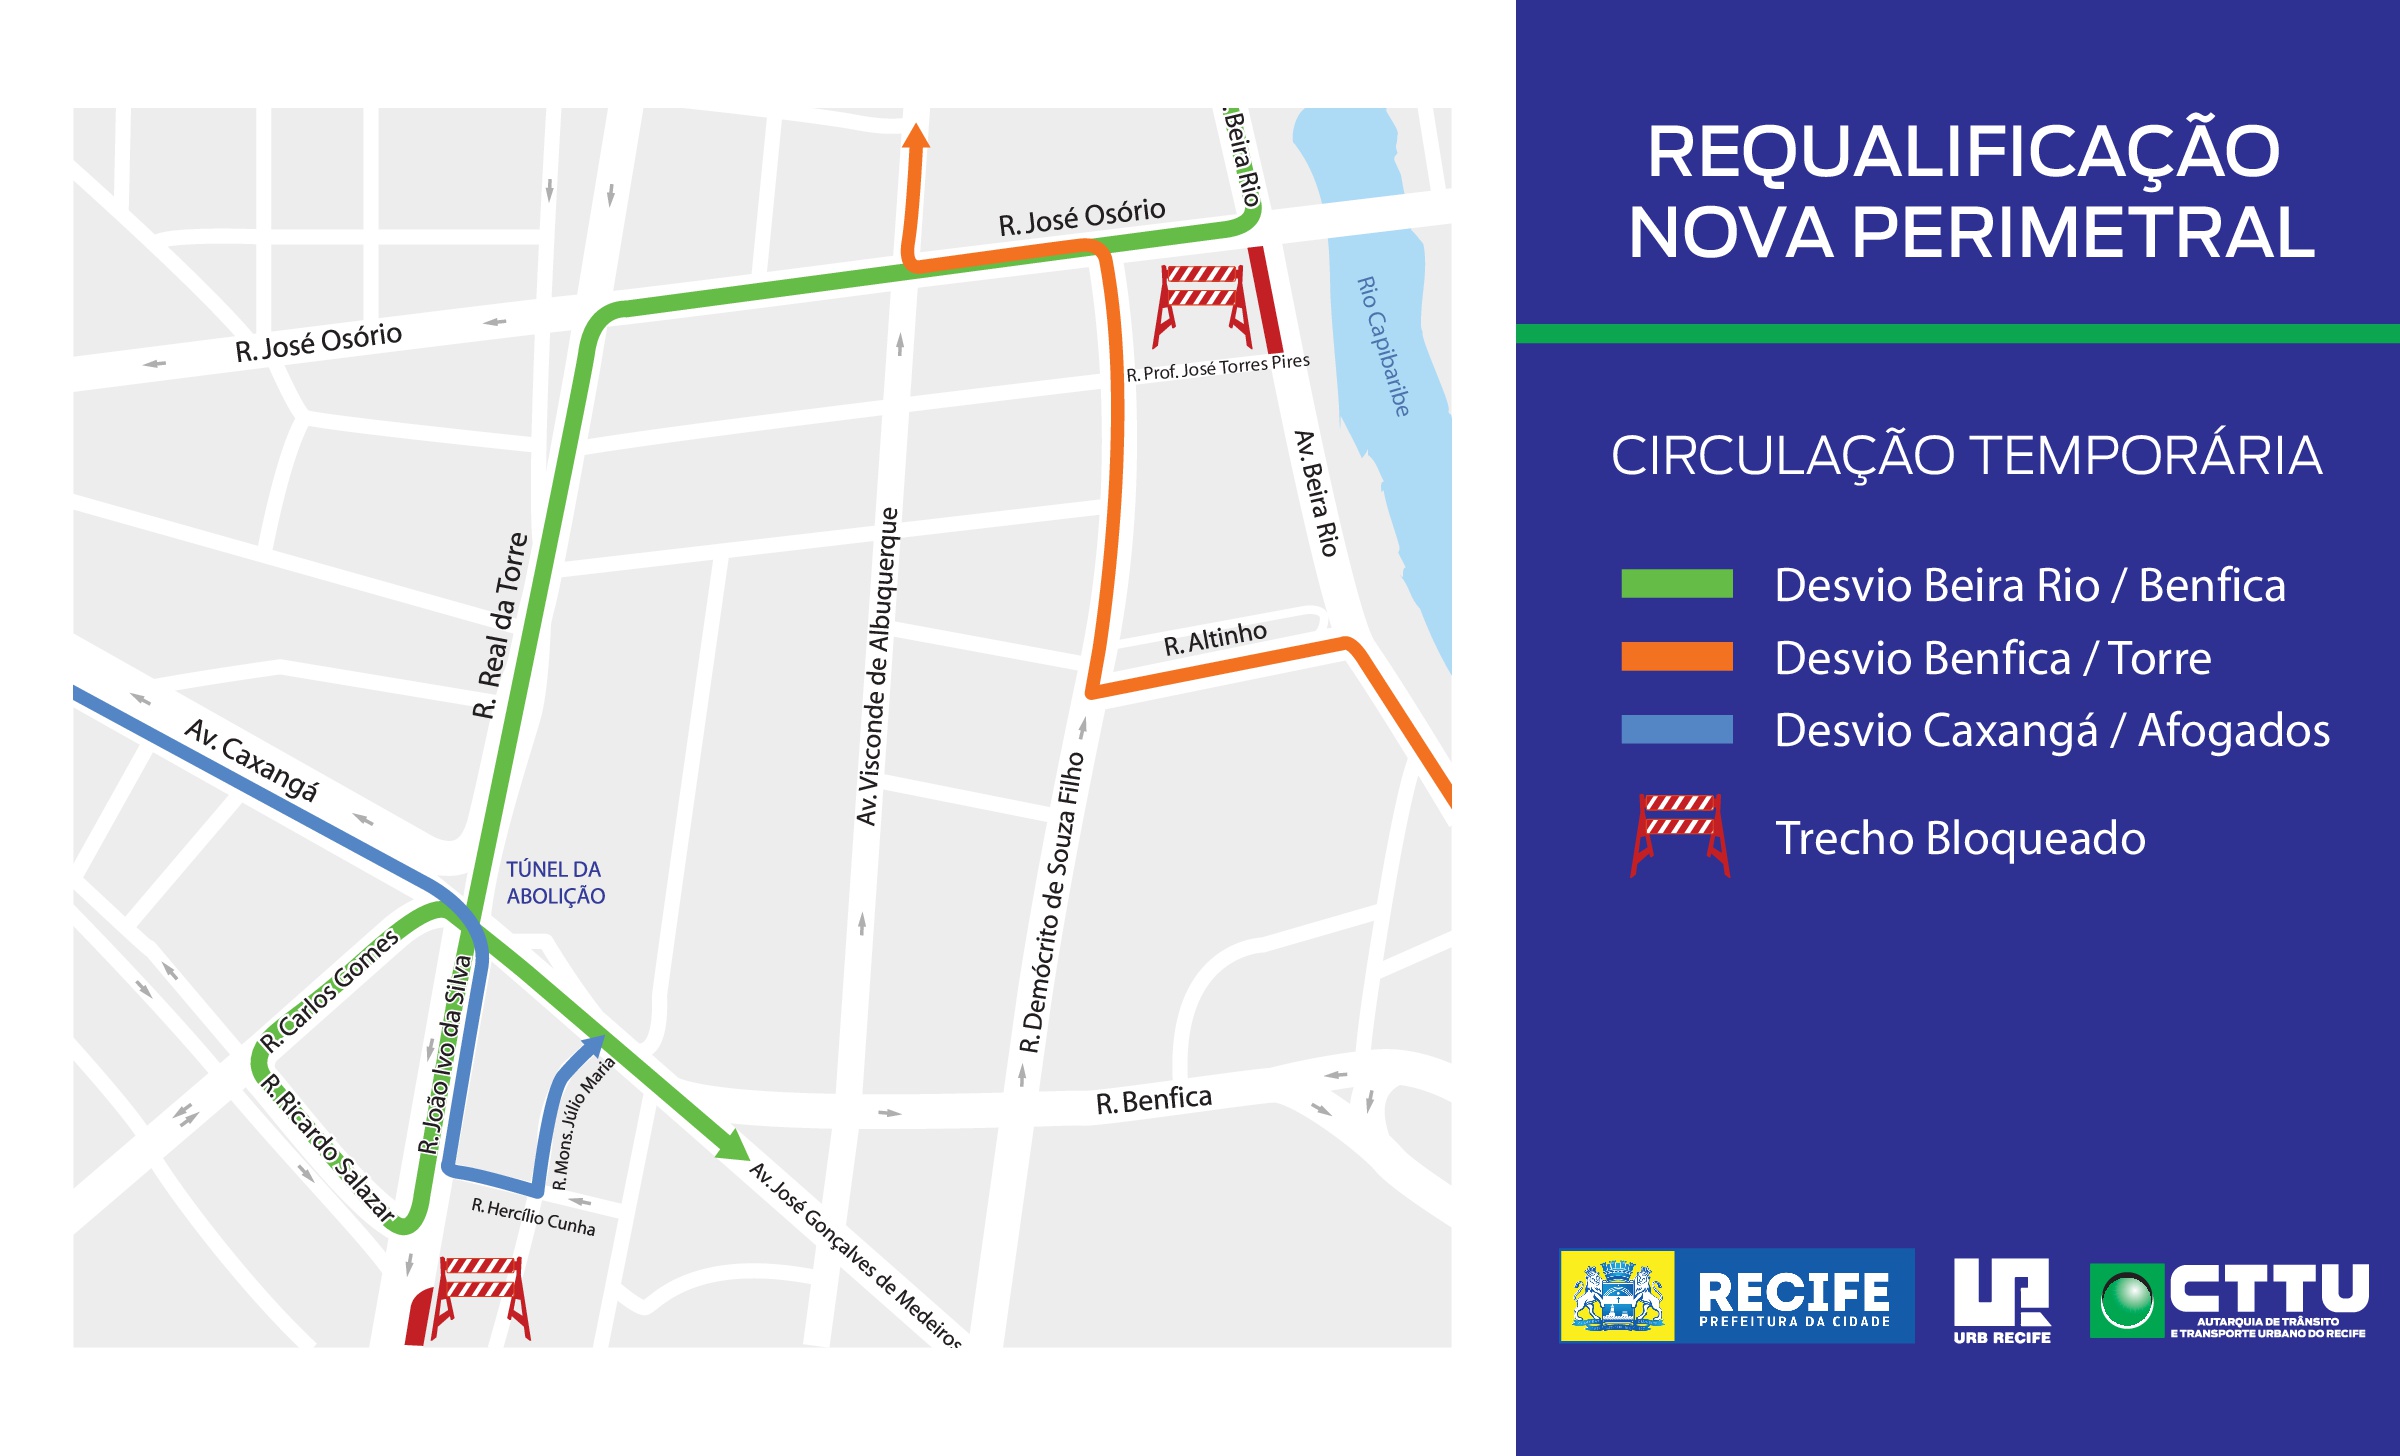 Prefeitura do Recife avança com novas obras da II Perimetral no bairro da Madalena